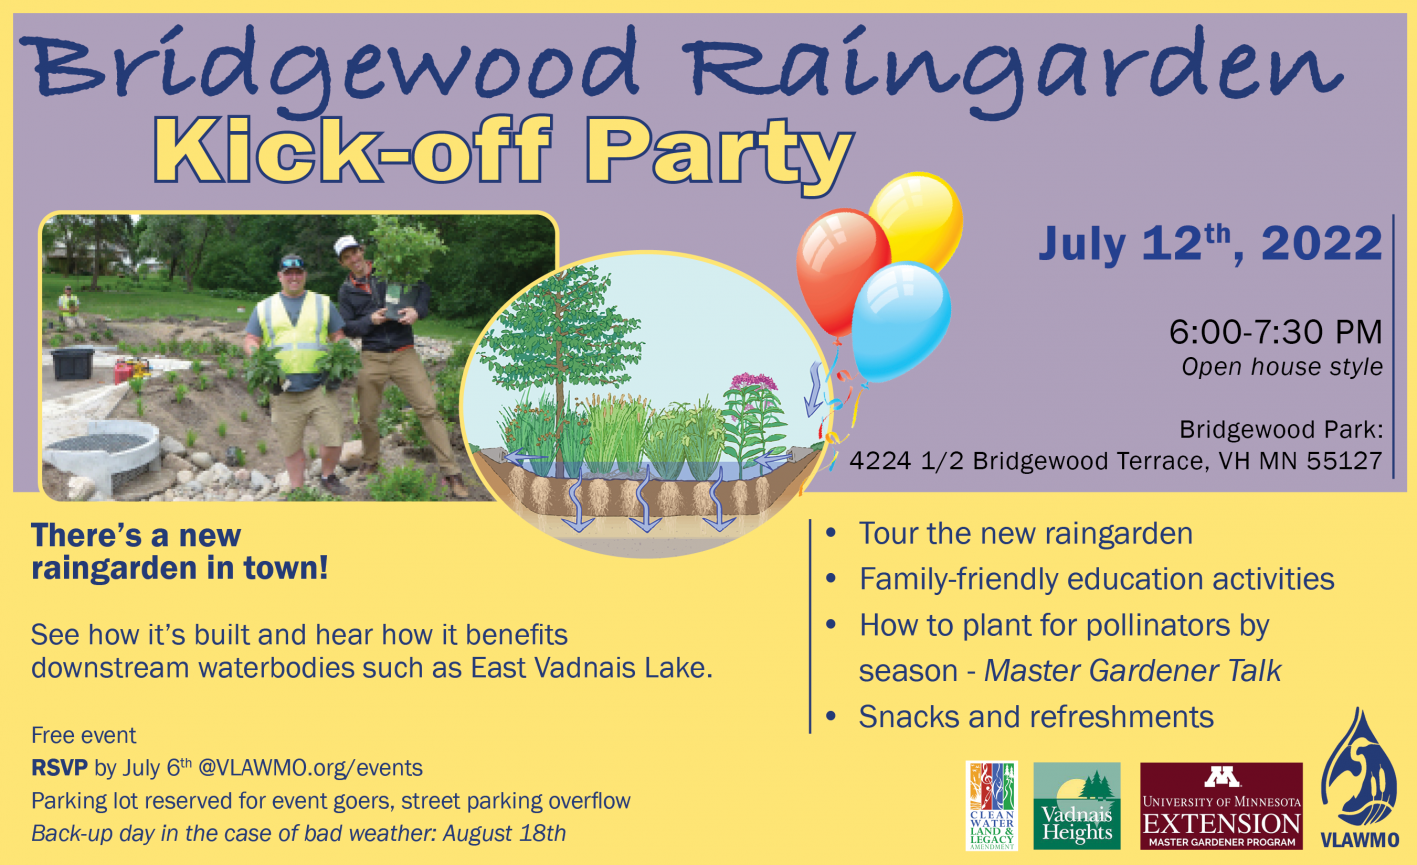 Bridgewood Raingarden Kick-off Flyer 6-7-22.png